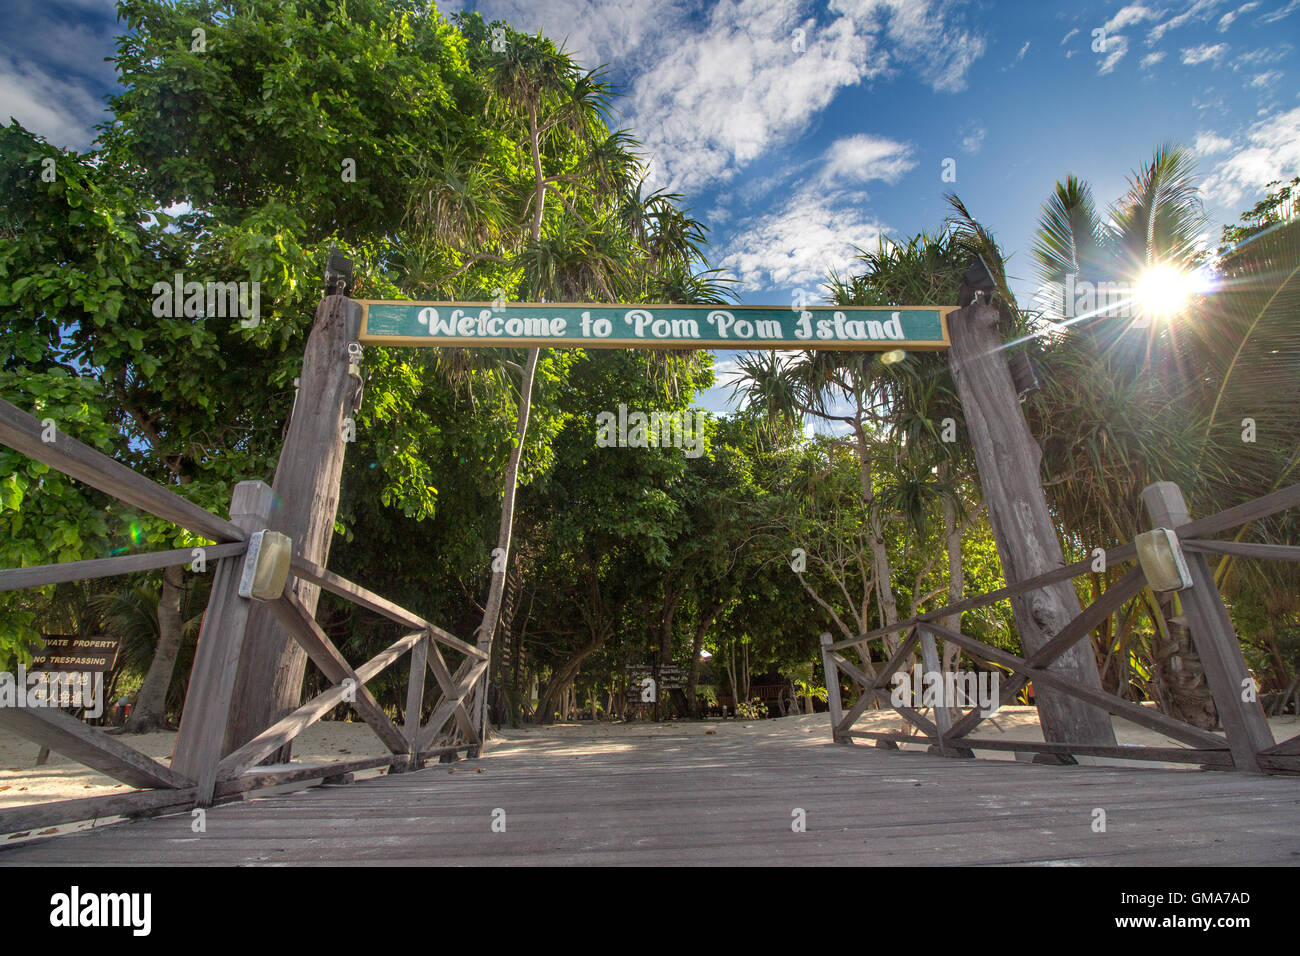 Welcome to Pom Pom Island, Sabah Stock Photo - Alamy